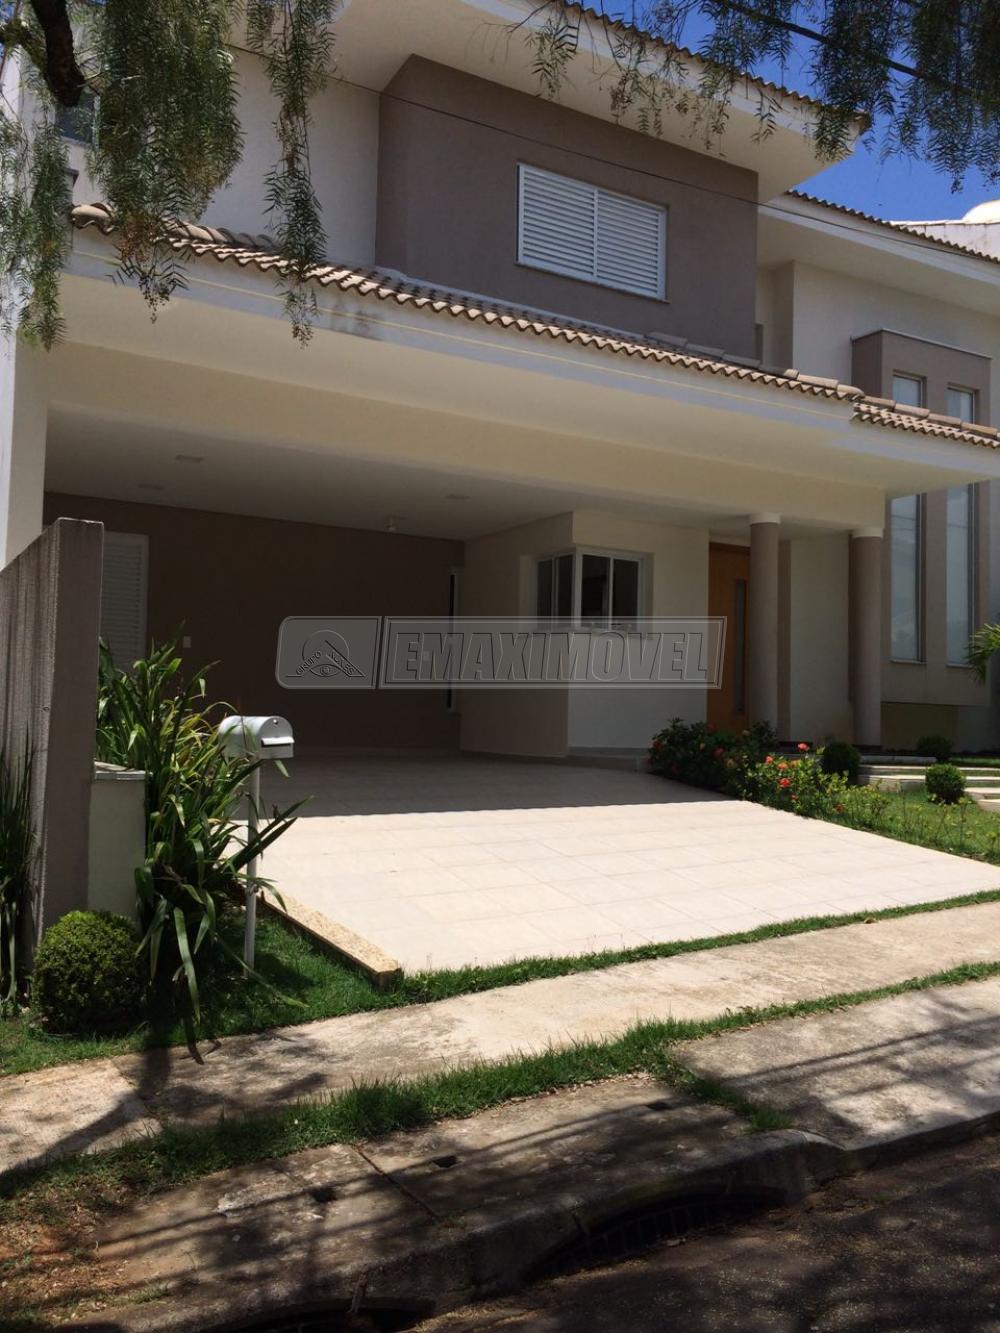 Comprar Casa / em Condomínios em Sorocaba R$ 1.980.000,00 - Foto 1